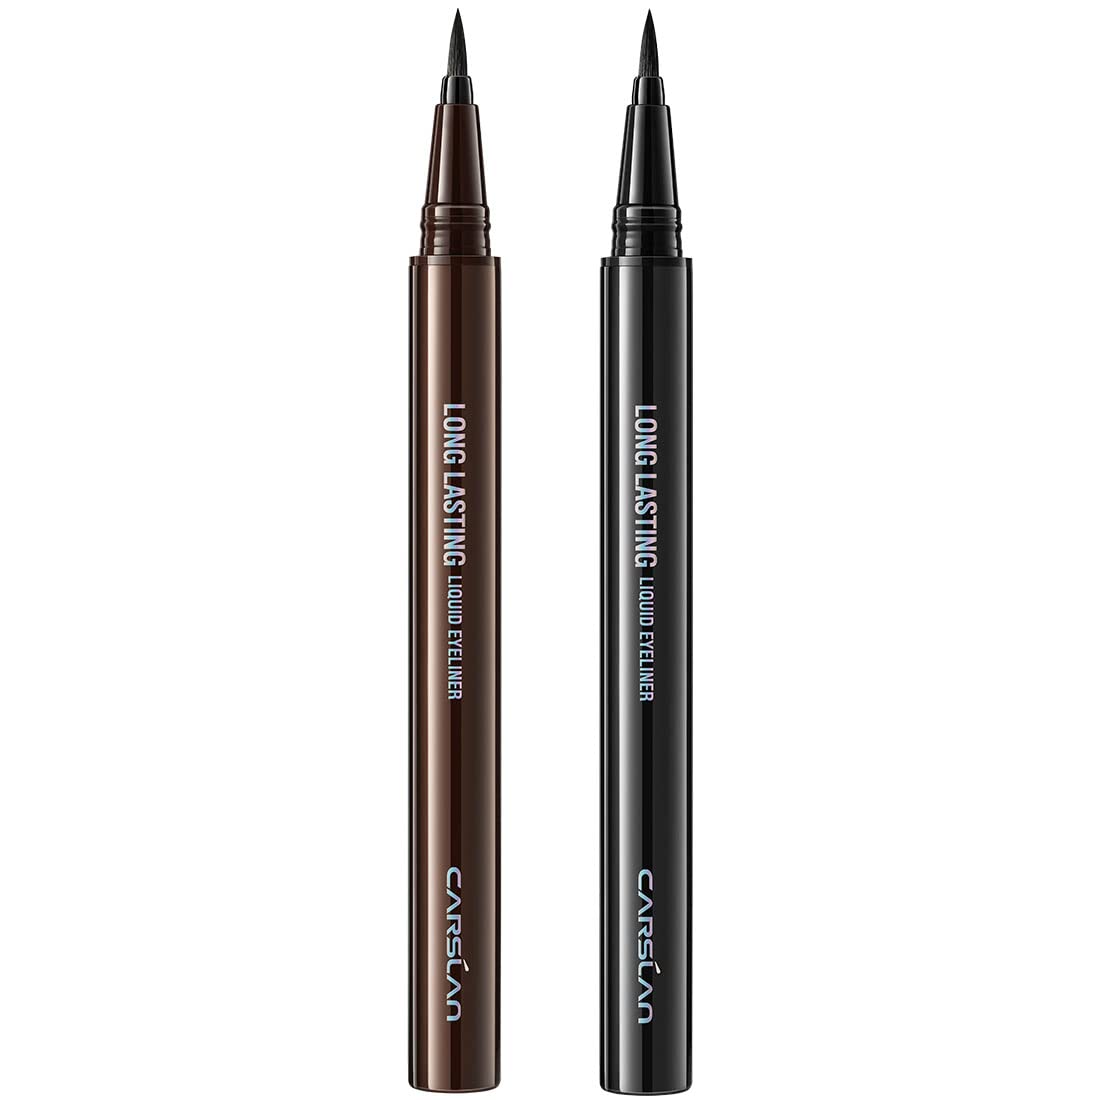 CARSLAN Longlasting Liquid Eyeliner, Waterproof, Smudgeproof, 12H Longwear Eye Liner Pencil, Black+Brown, 2Count